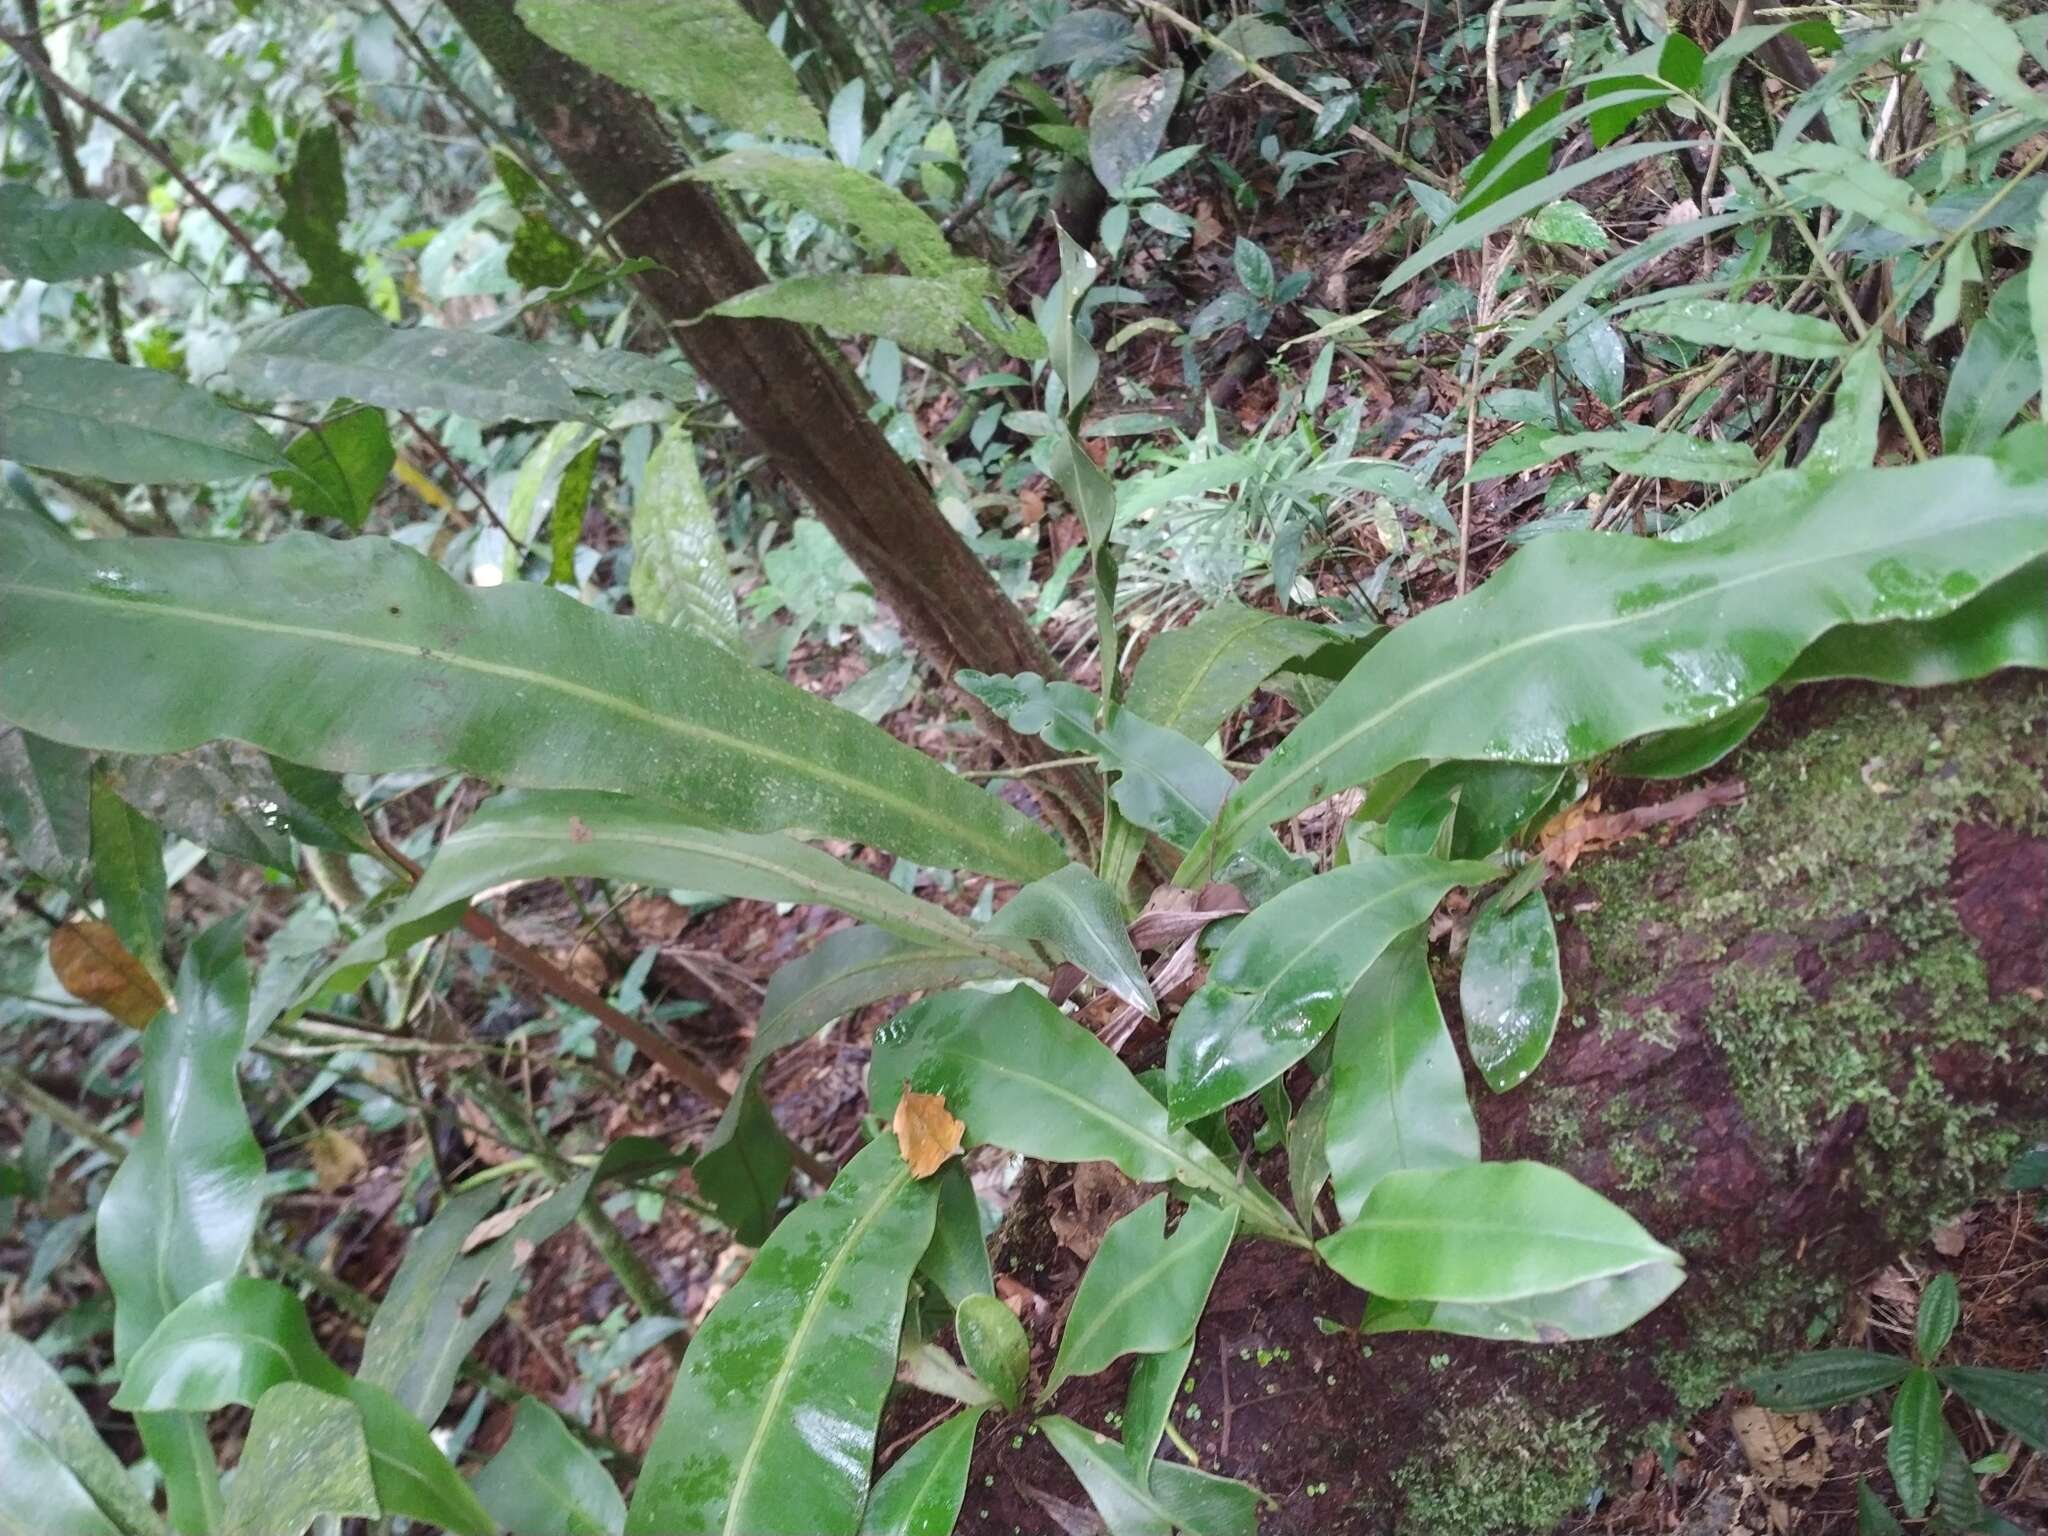 Image of wild birdnest fern